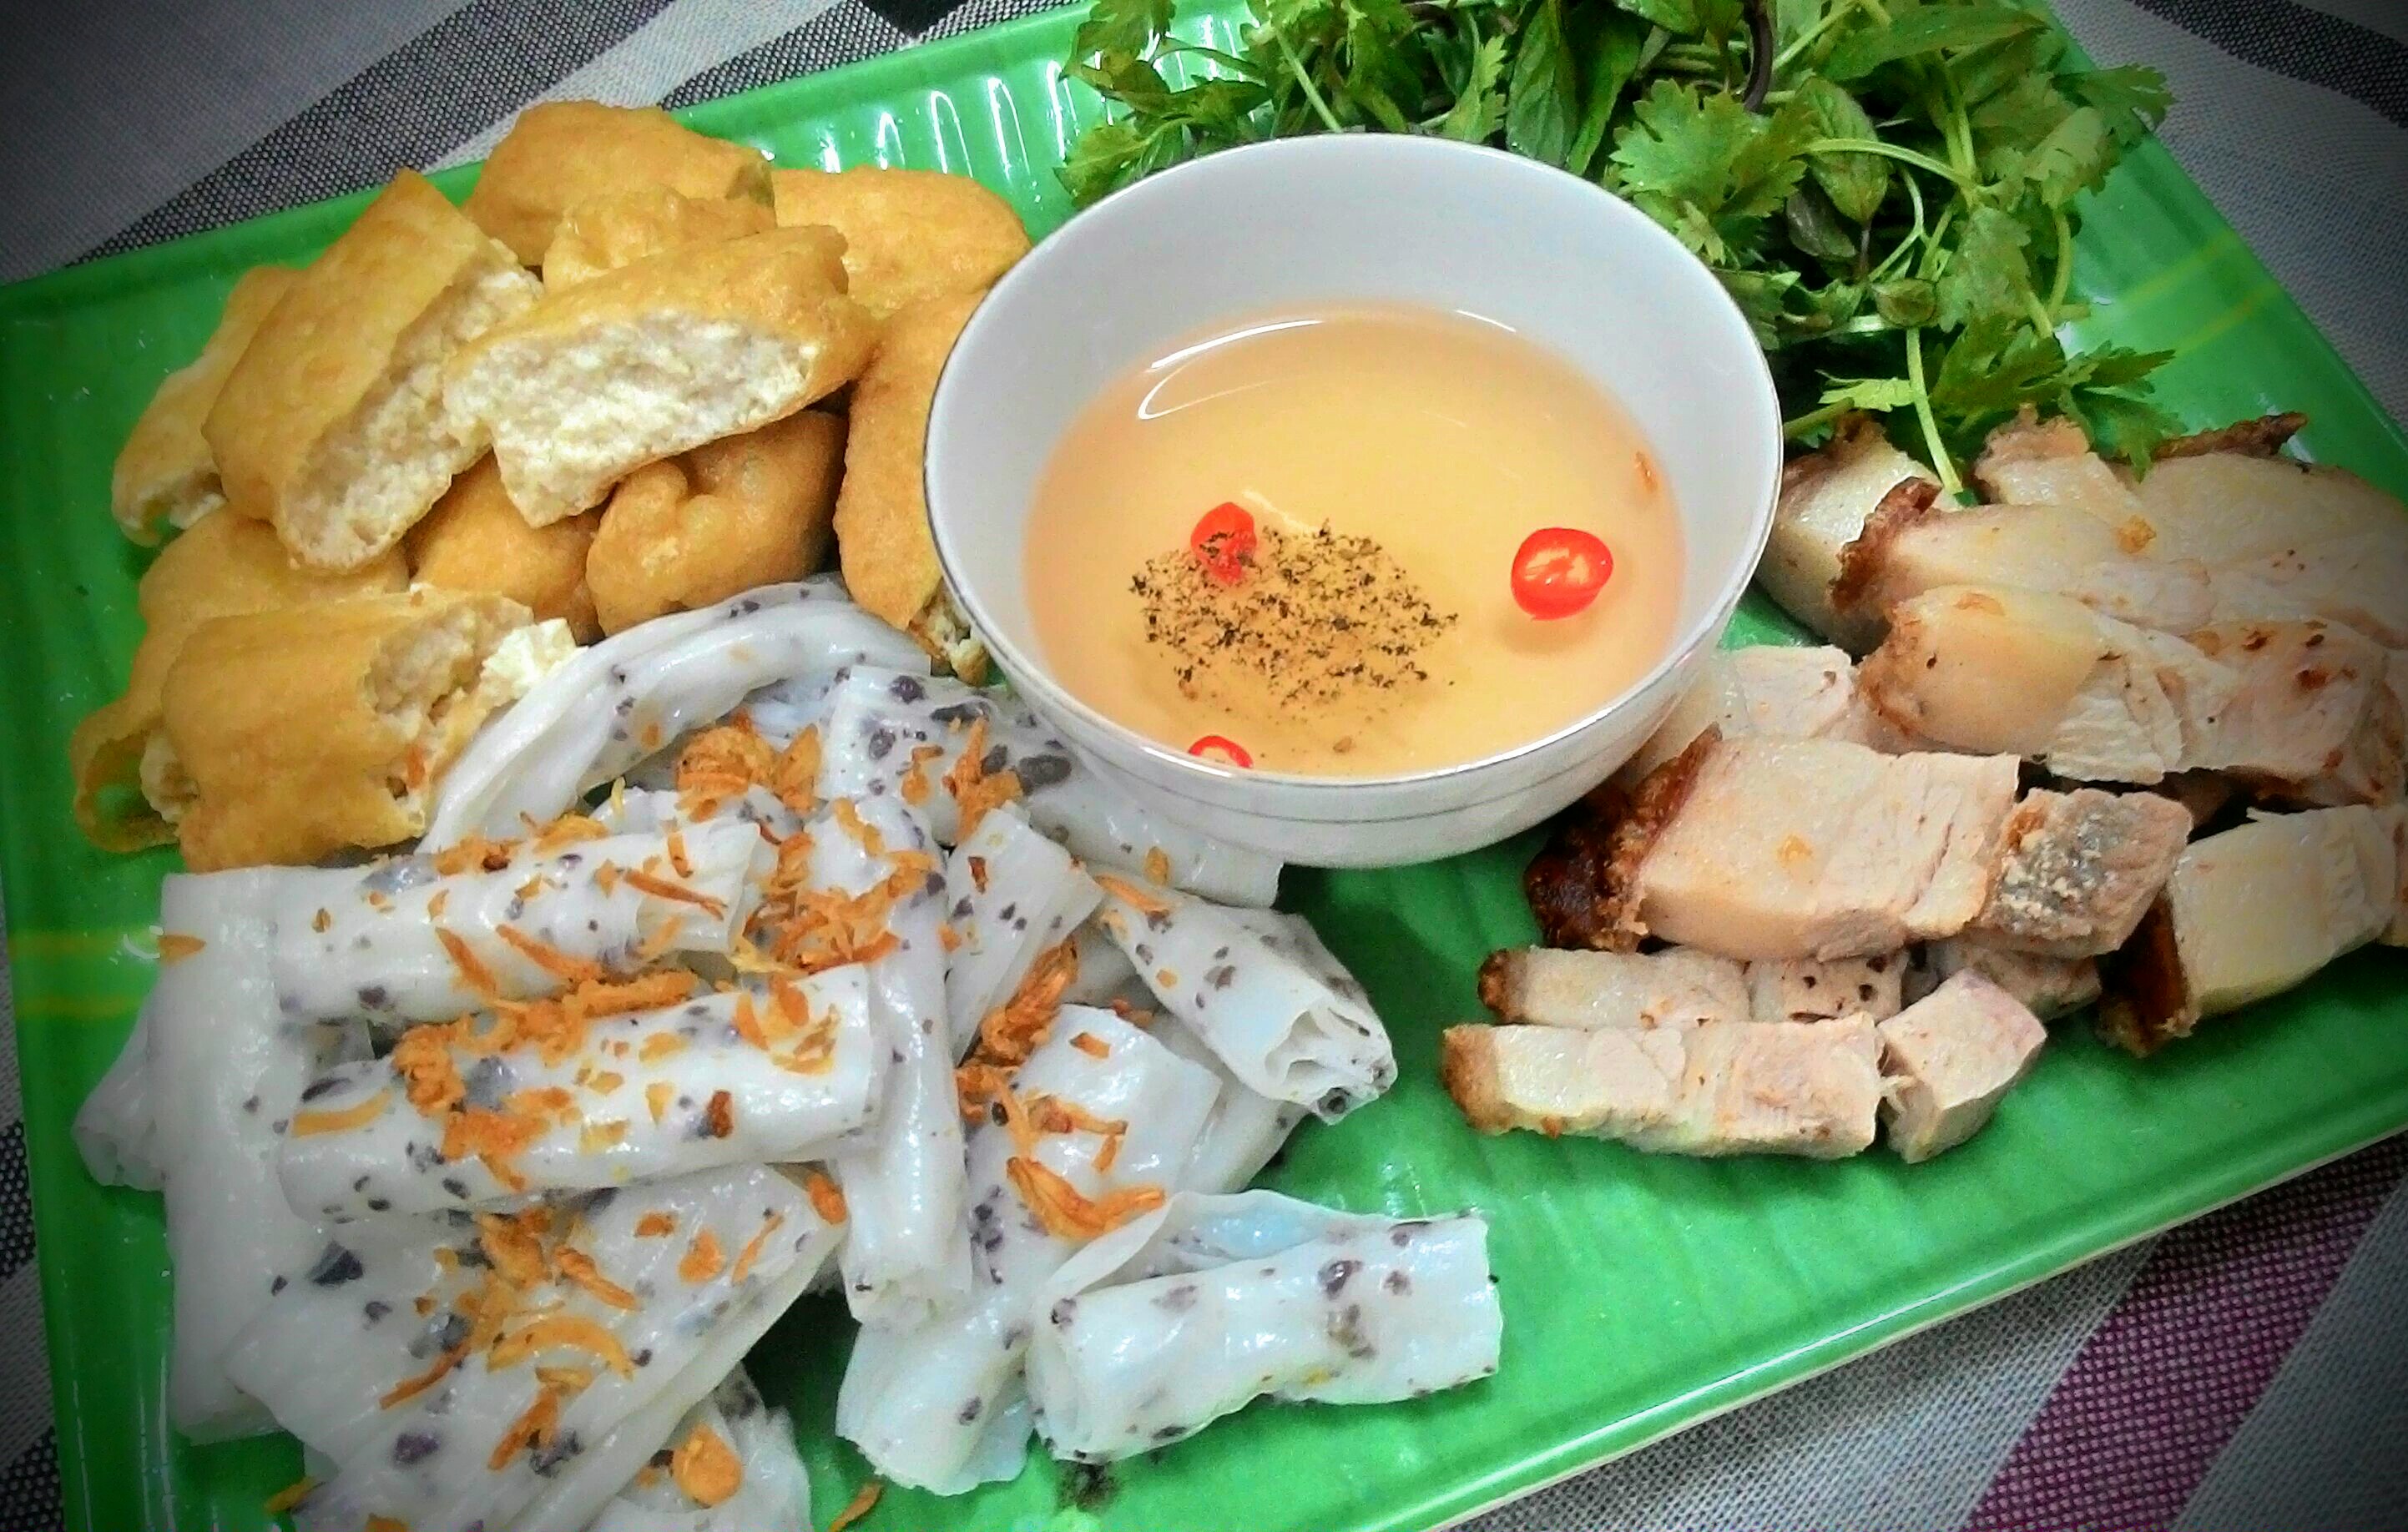 Bánh cuốn Thanh Trì - Món đặc sản tinh tế của ẩm thực Hà Thành - iVIVU.com